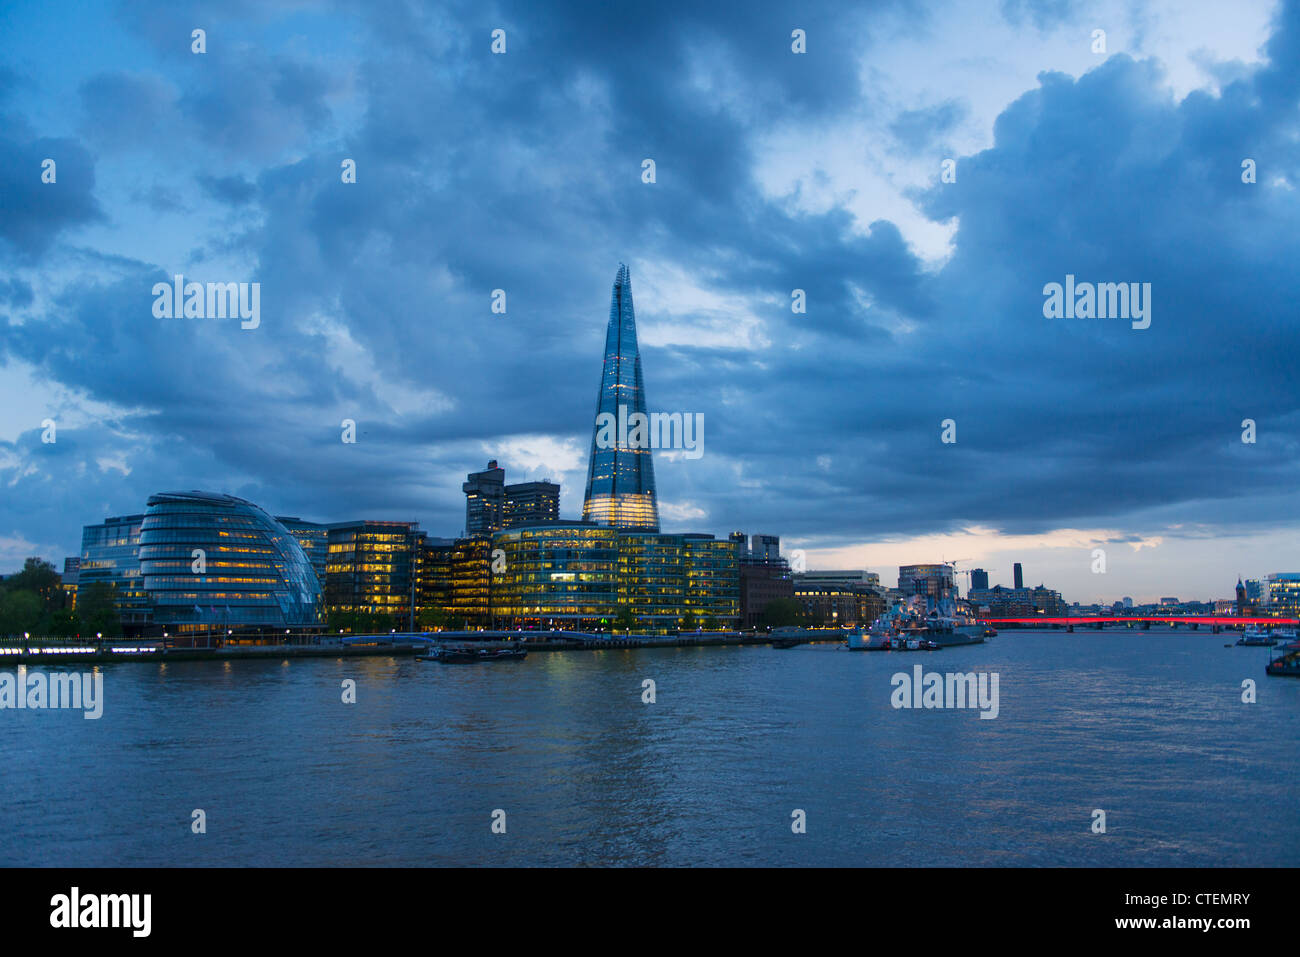 UK, England, London, Waterfront at dusk Stock Photo - Alamy